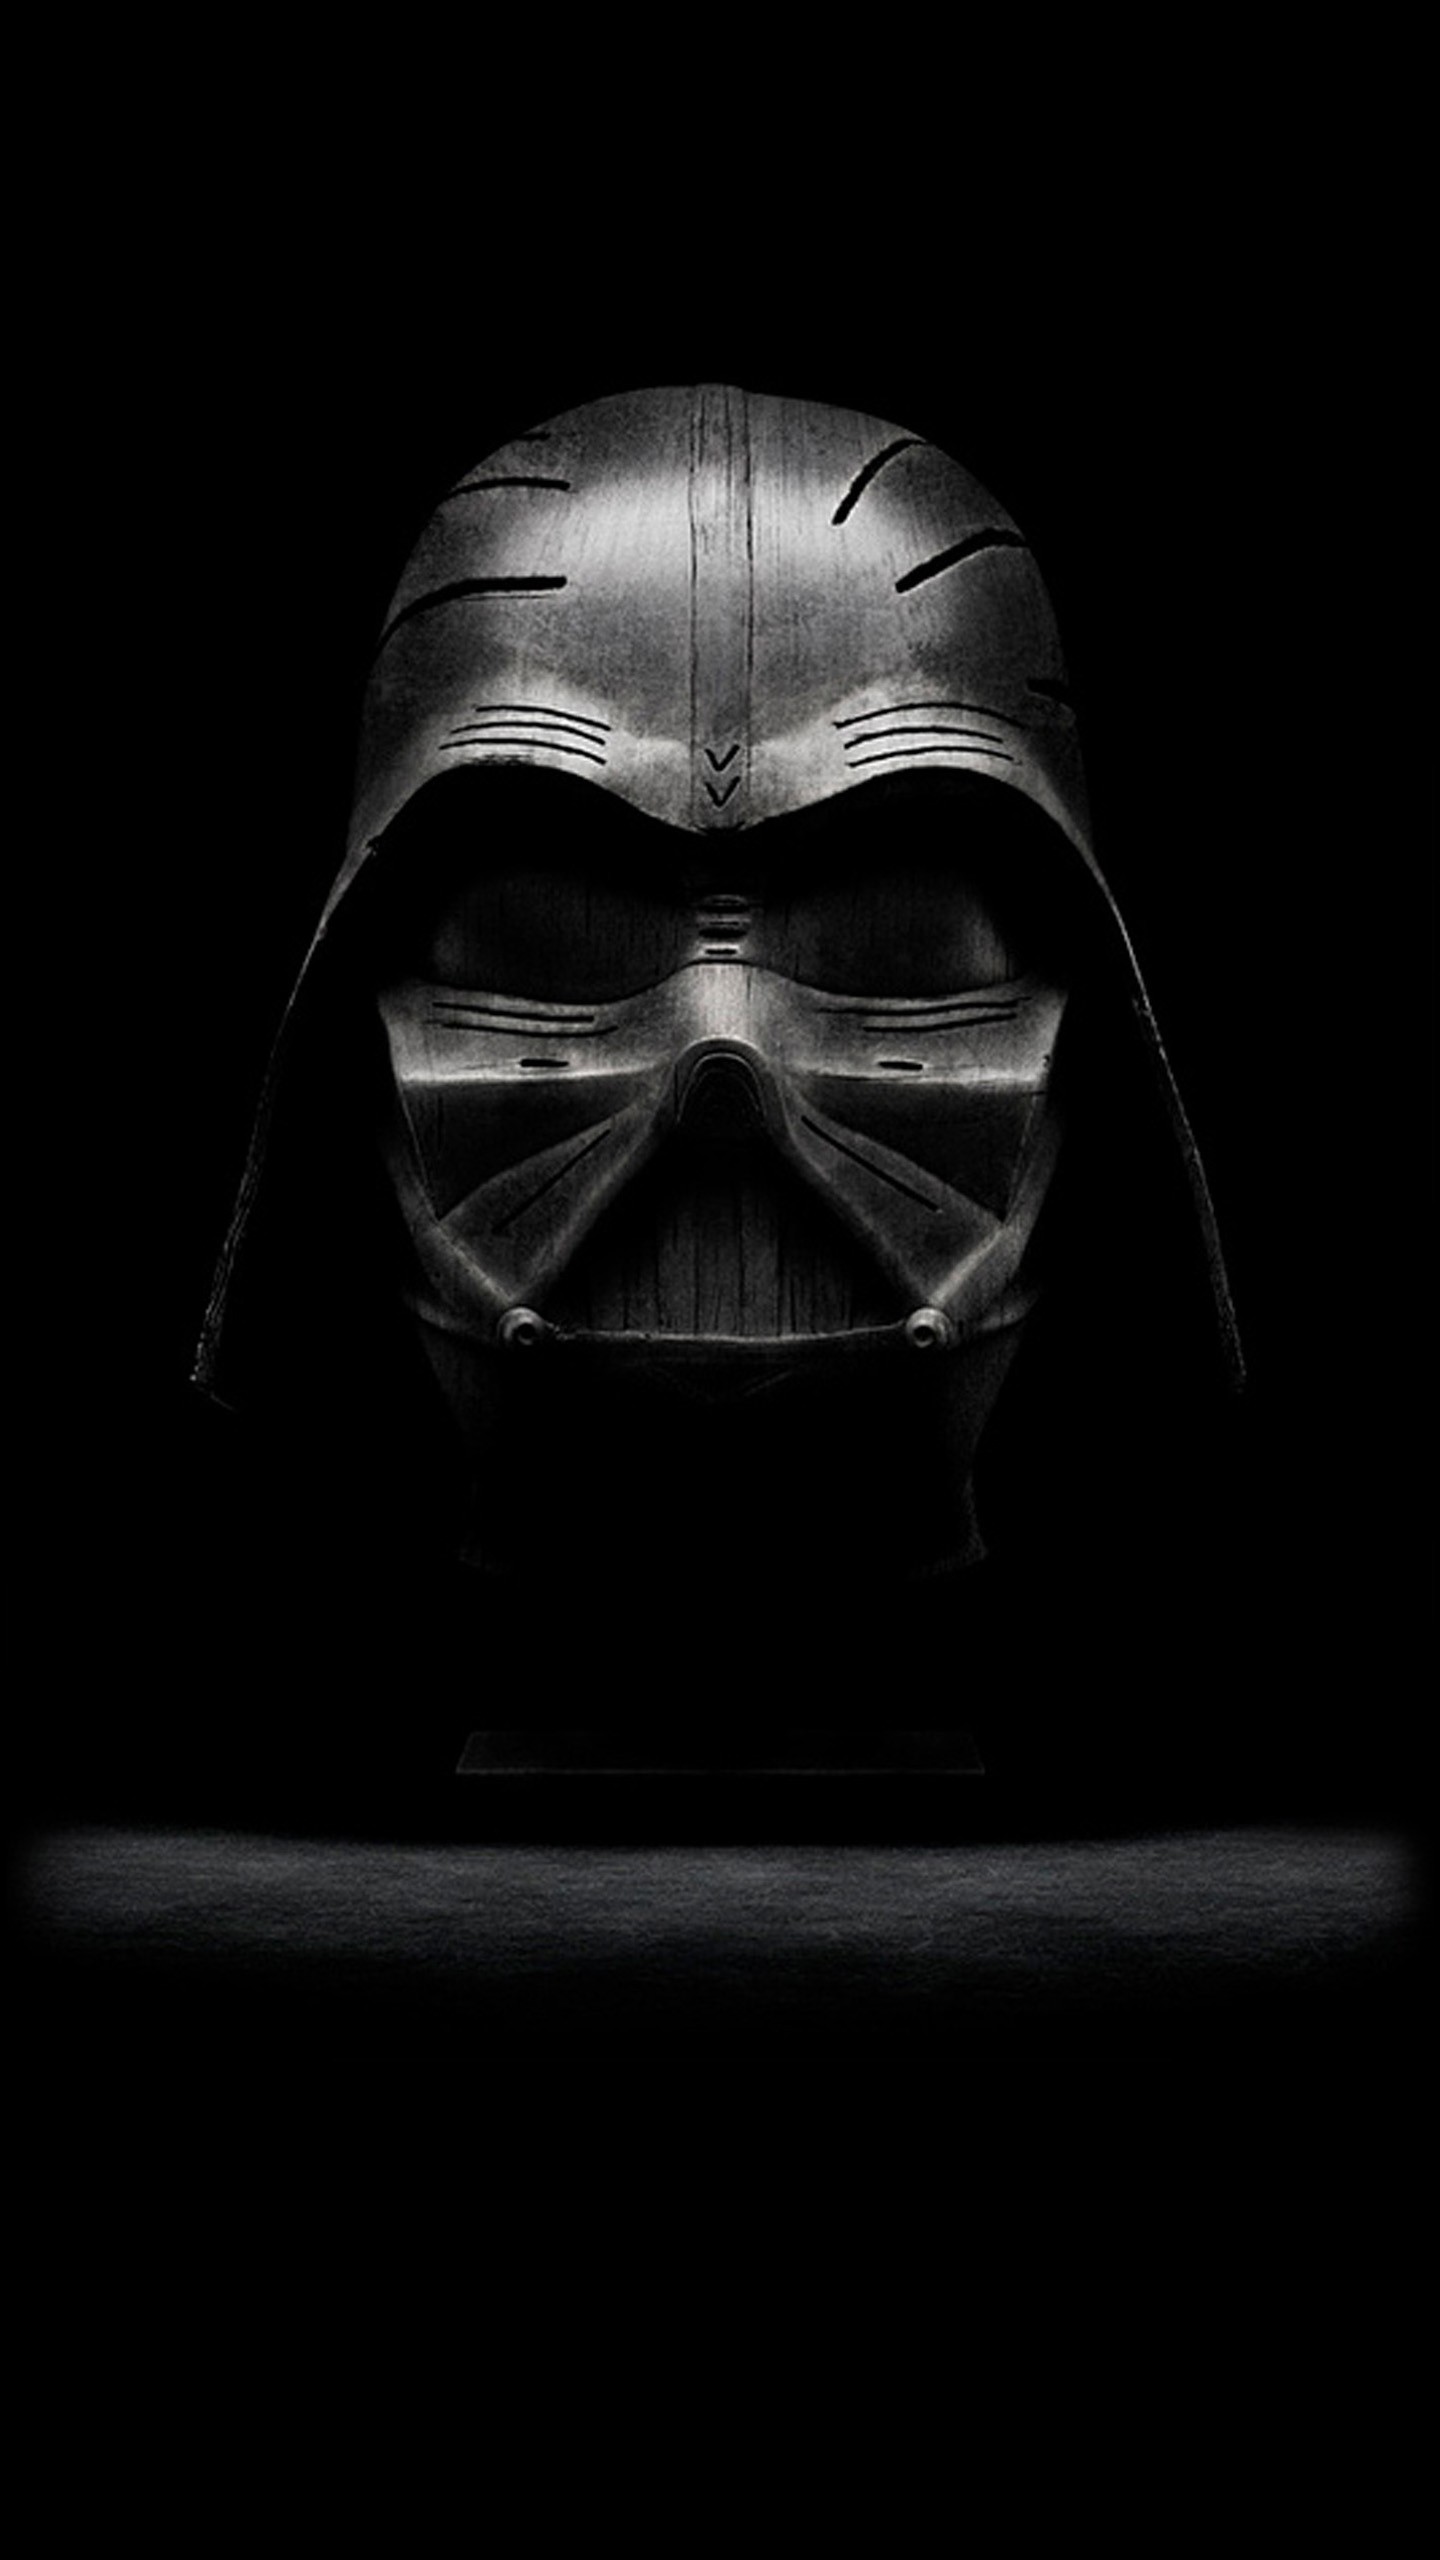 General 1440x2560 Darth Vader portrait display Star Wars Villains Sith mask dark black Star Wars digital art black background monochrome